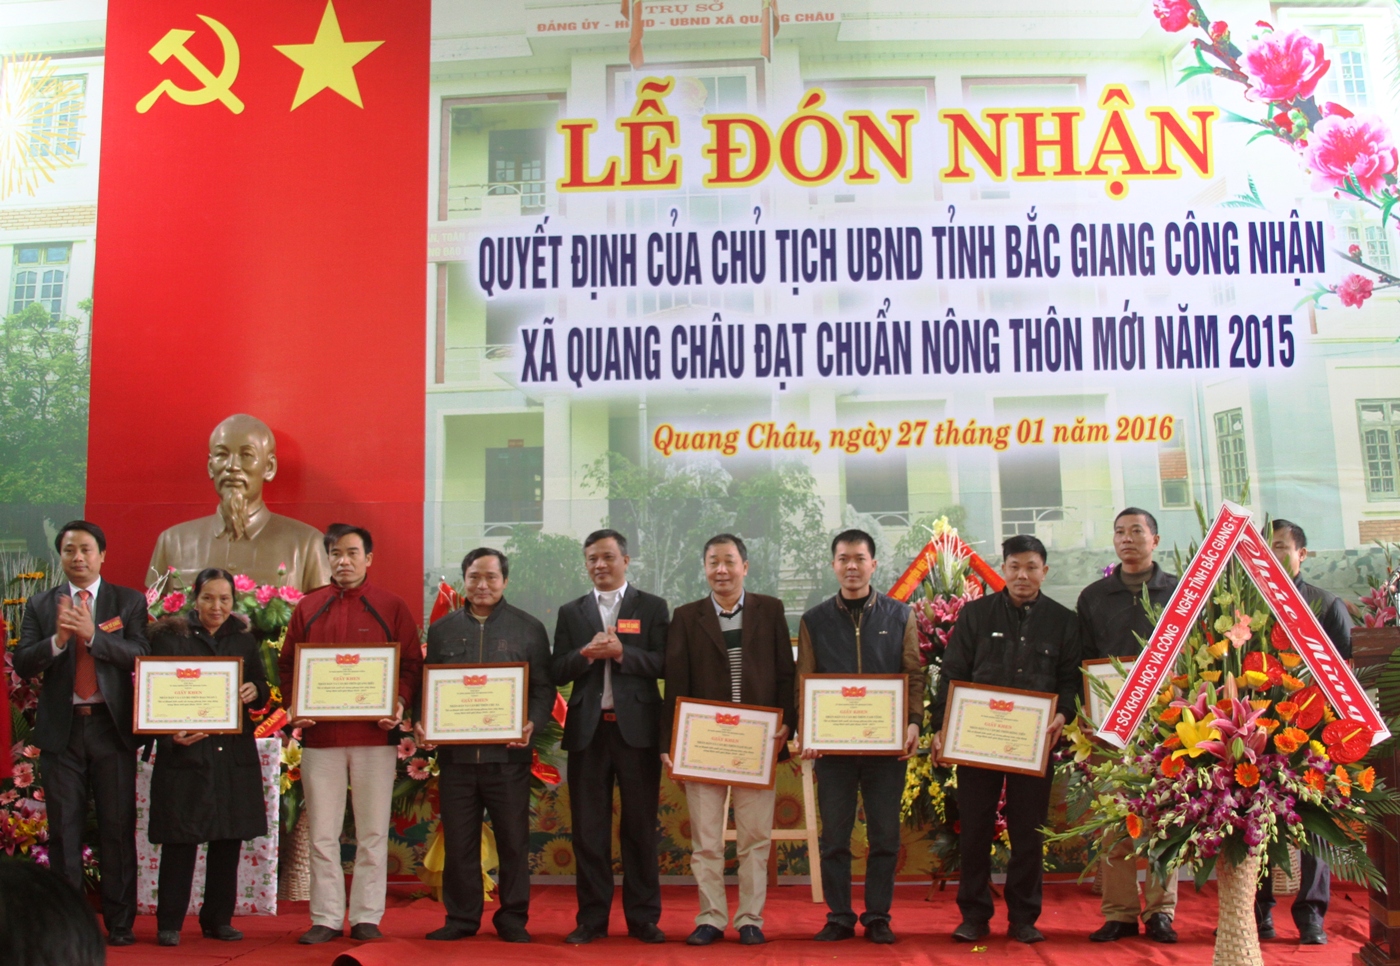 Quang Châu đón nhận quyết định của Chủ tịch UBND tỉnh Bắc Giang công nhận xã đạt chuẩn nông thôn...